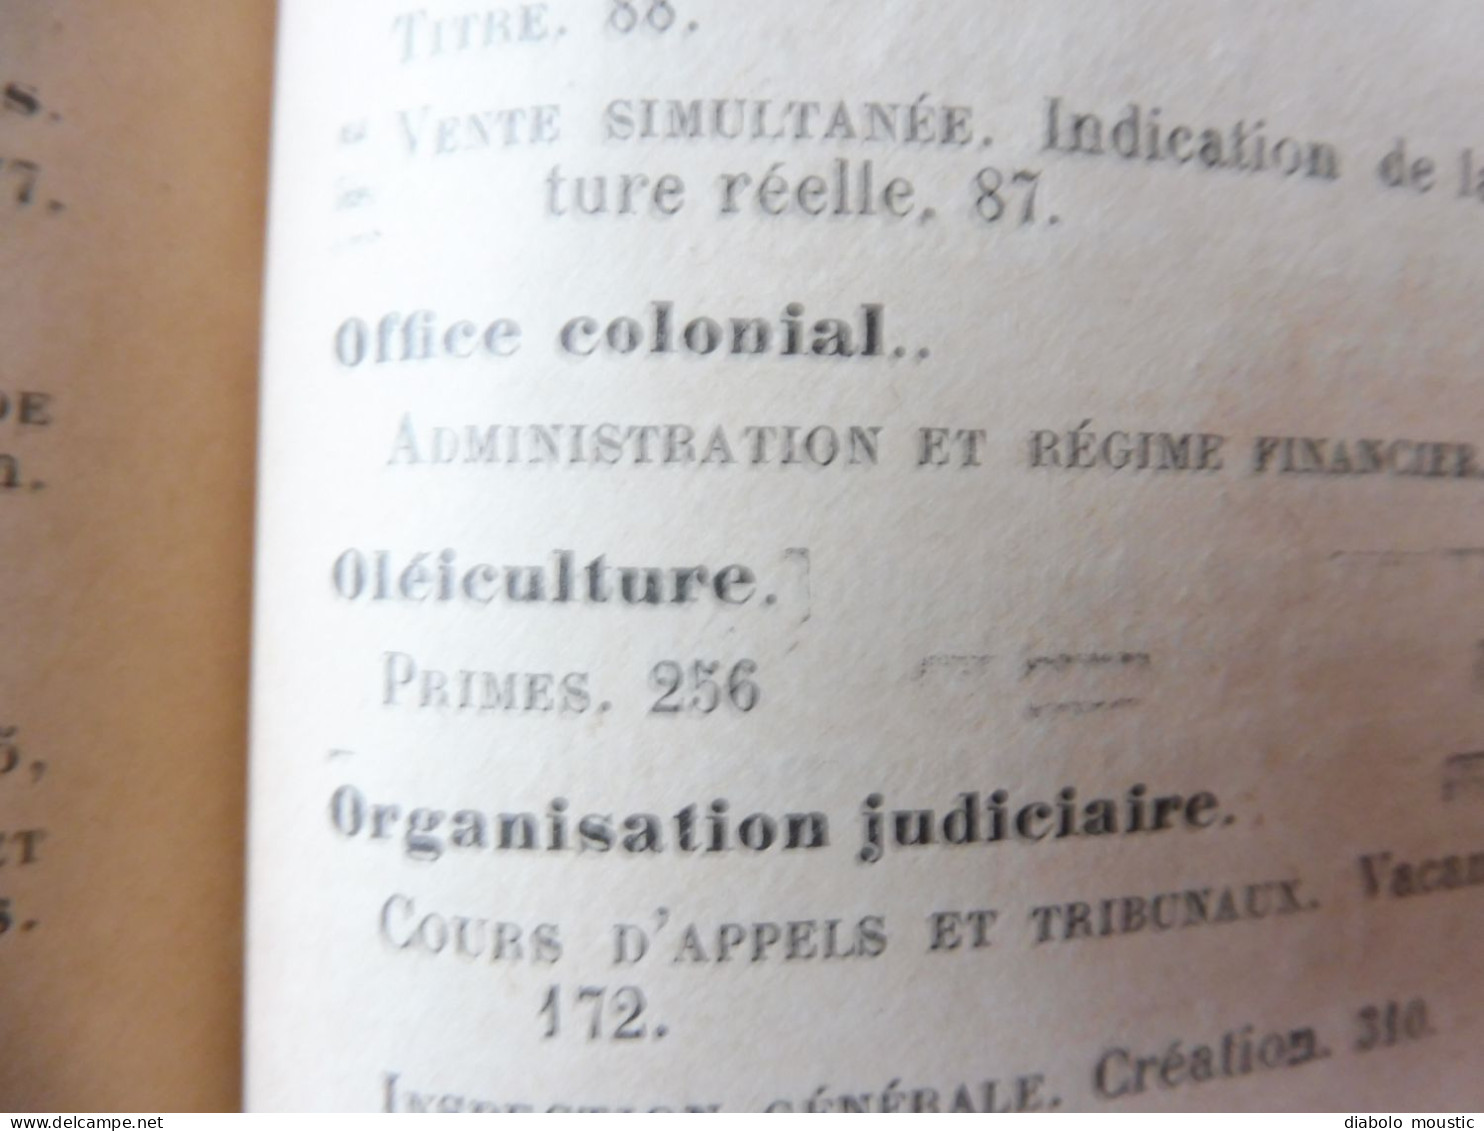 1910  RECUEIL des LOIS : Prostitution des mineurs, Légion étrangère, Sections Spéciales, Raisins et vendange; Etc ; Etc